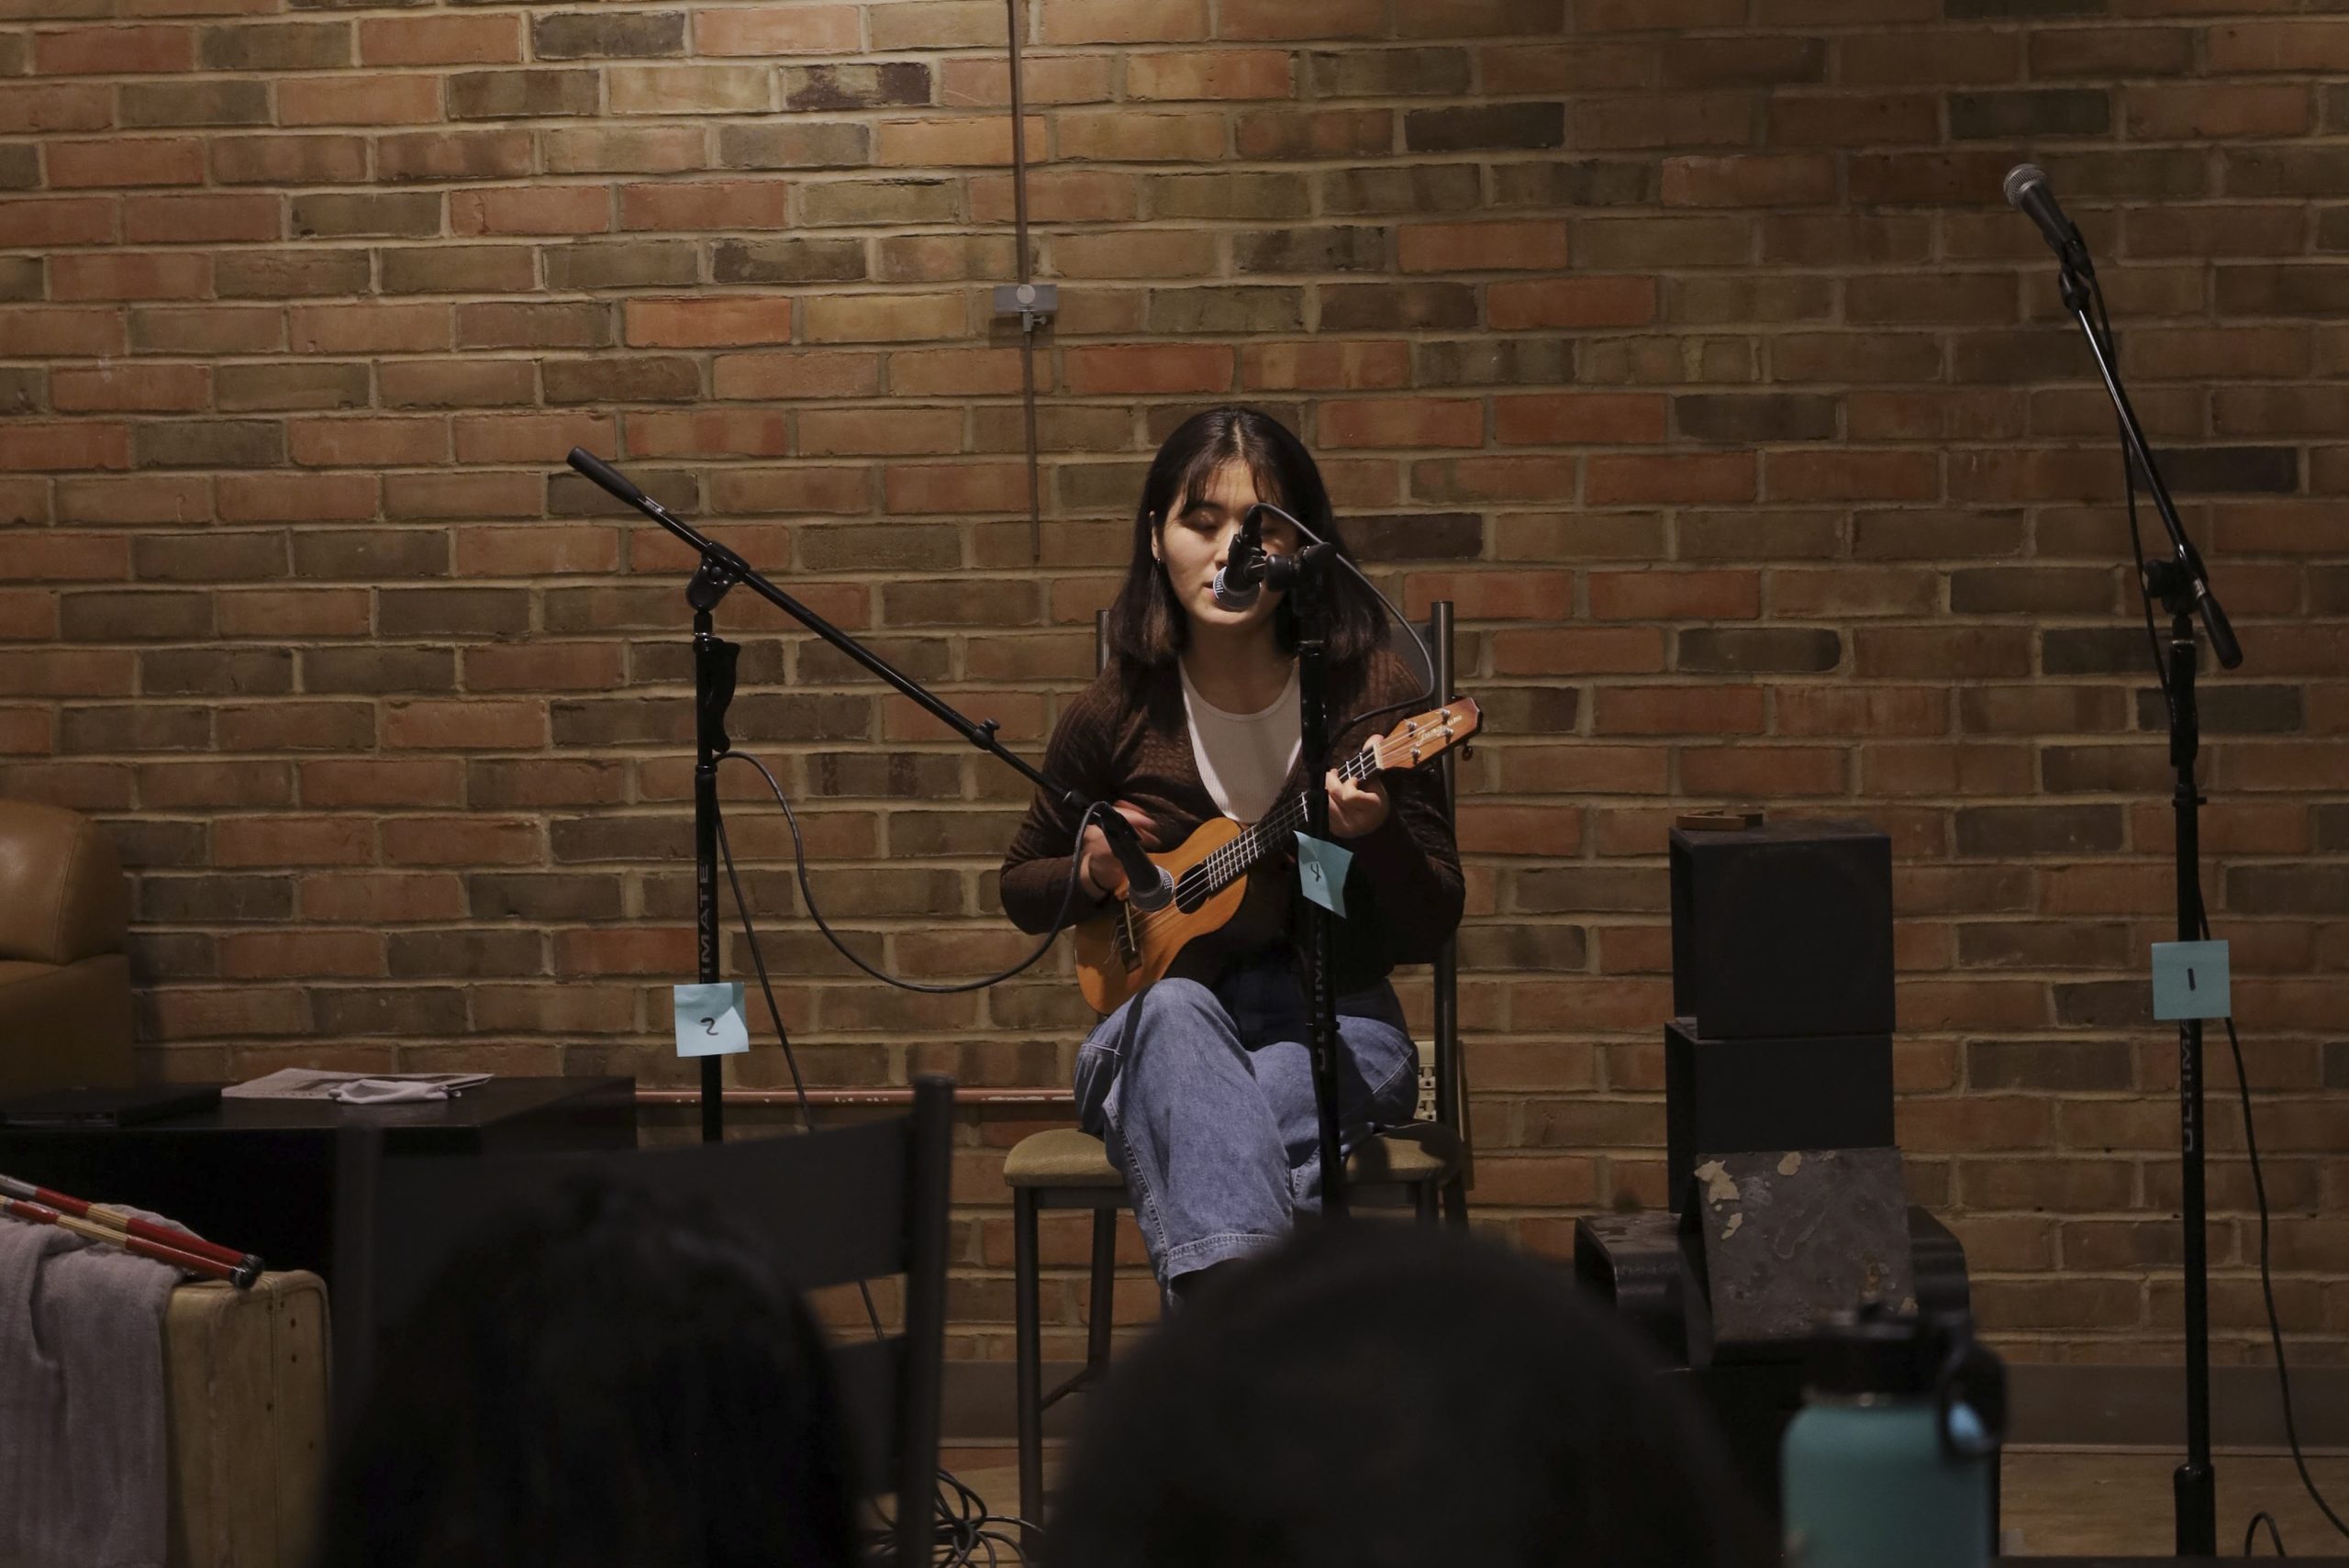 Yujin singing and playing ukulele